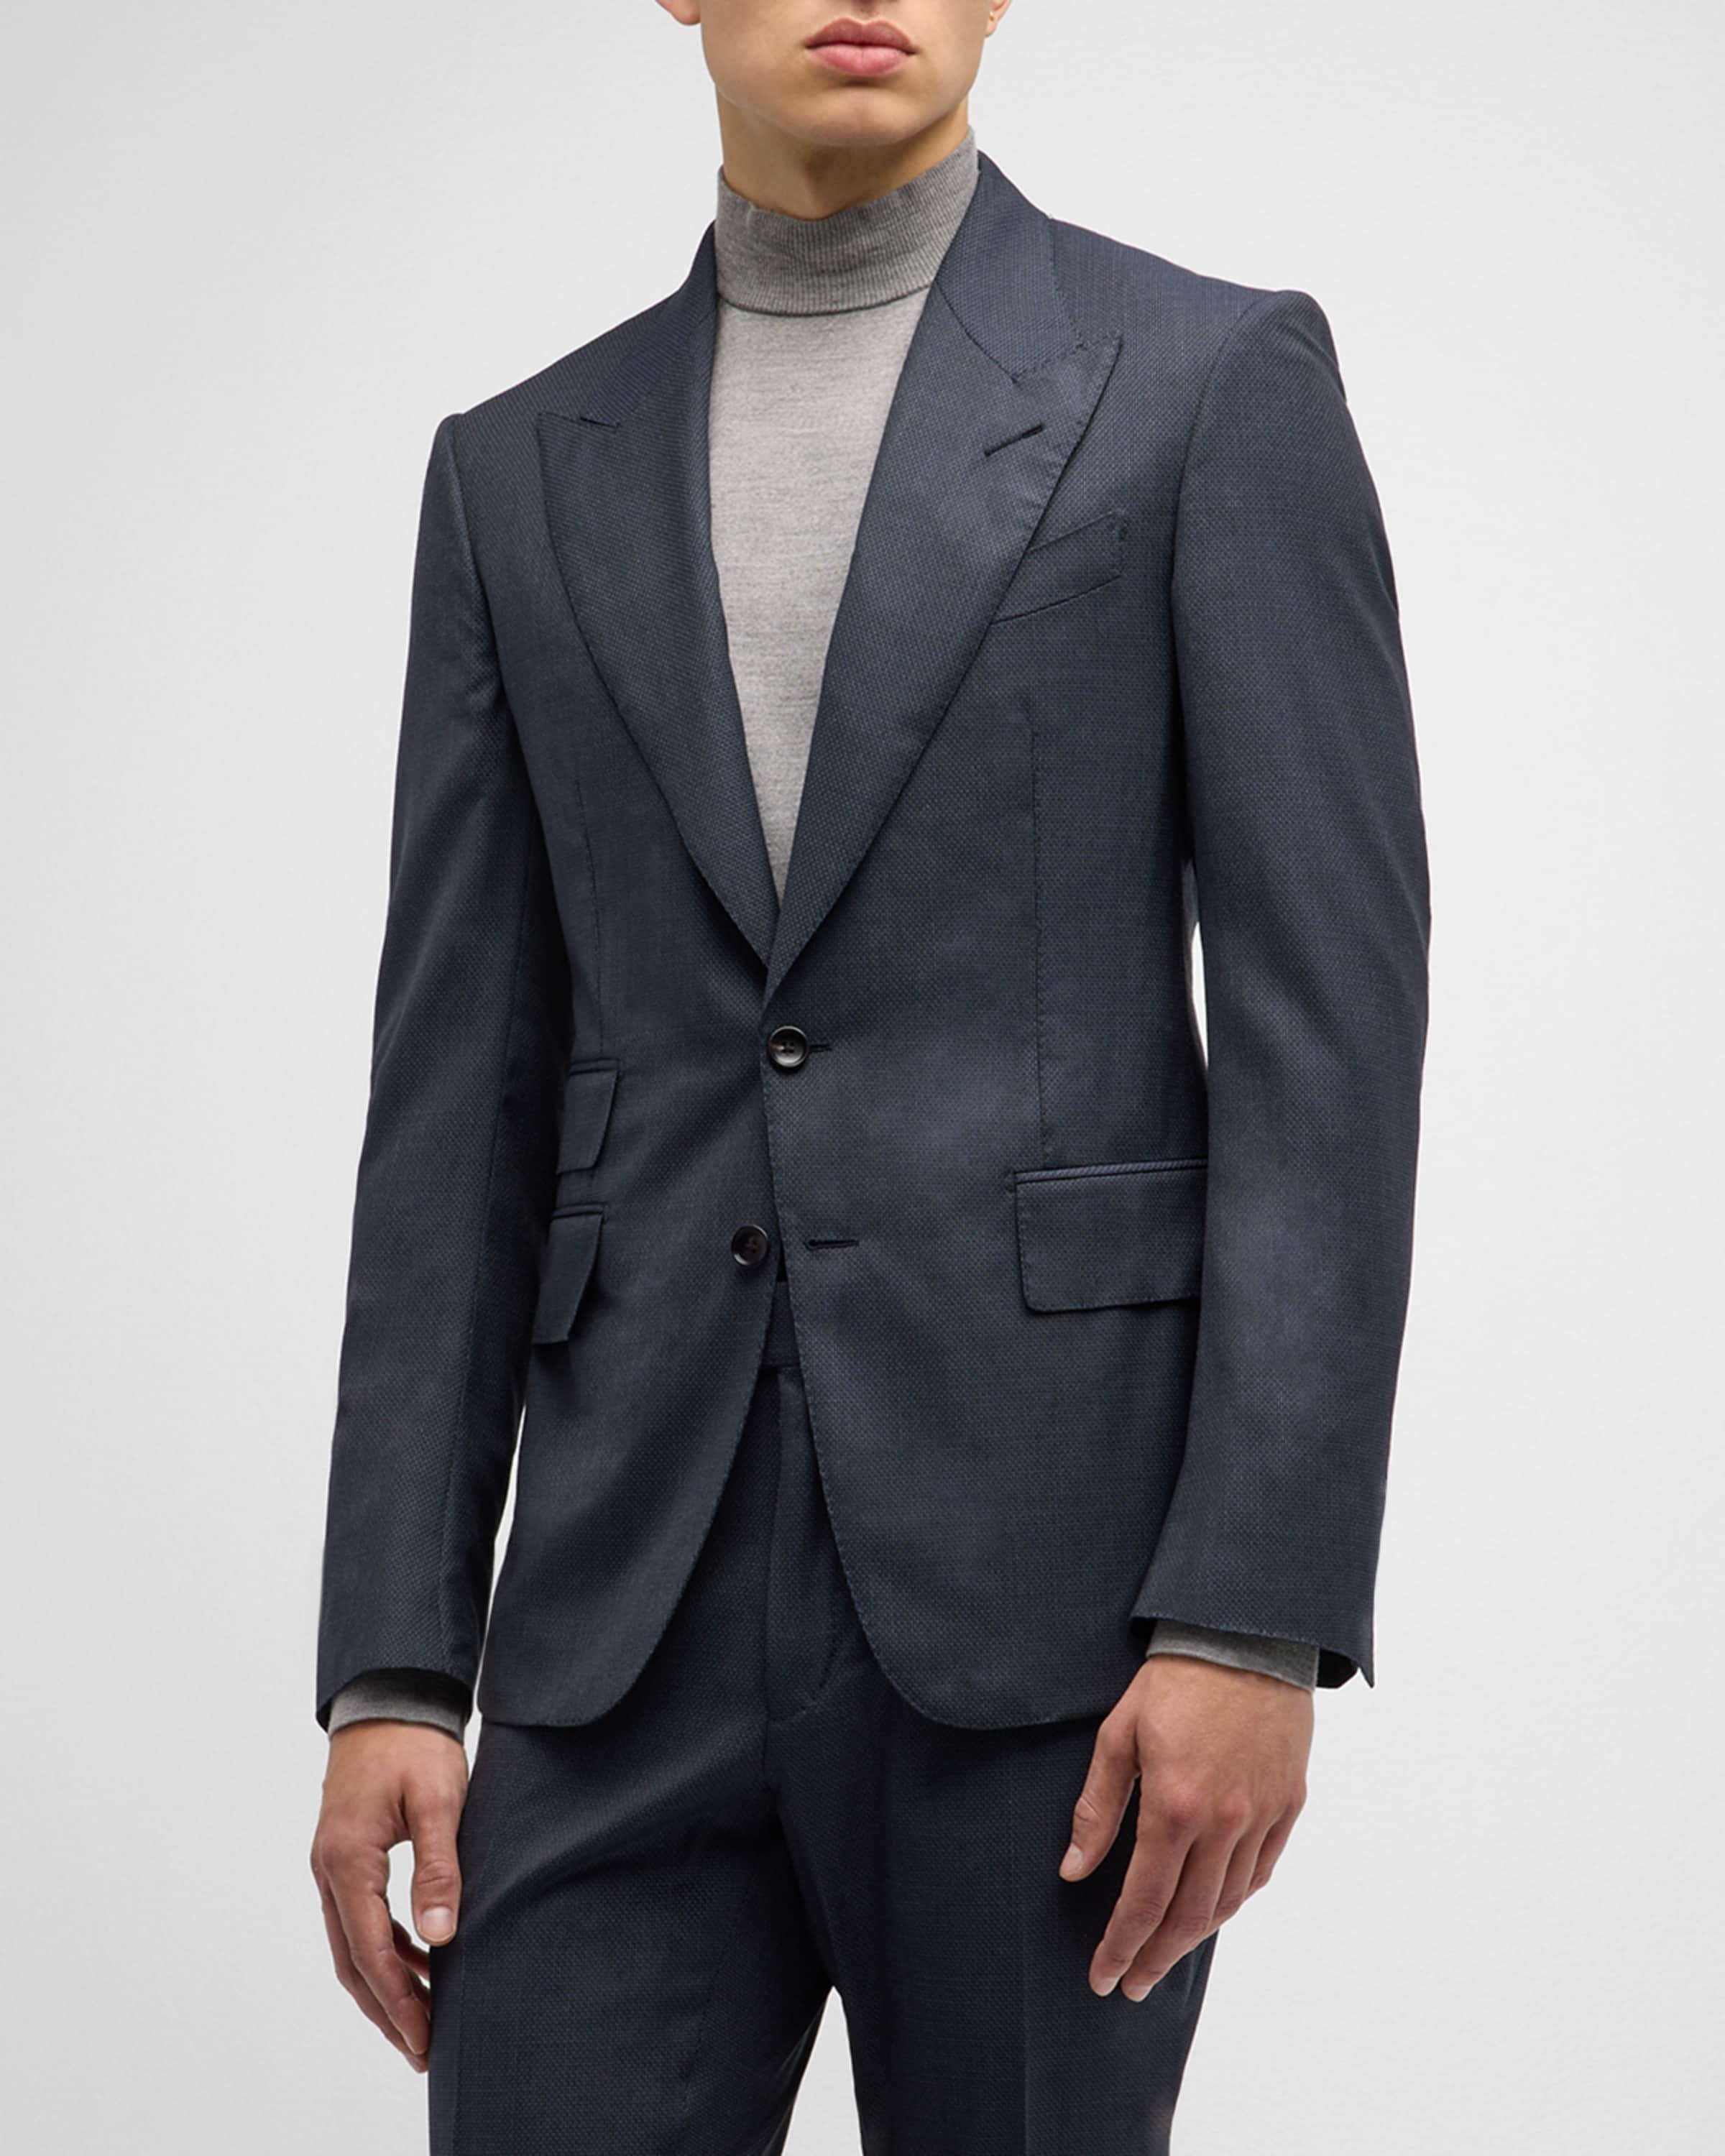 Men's Shelton Micro-Hopsack Suit - 3